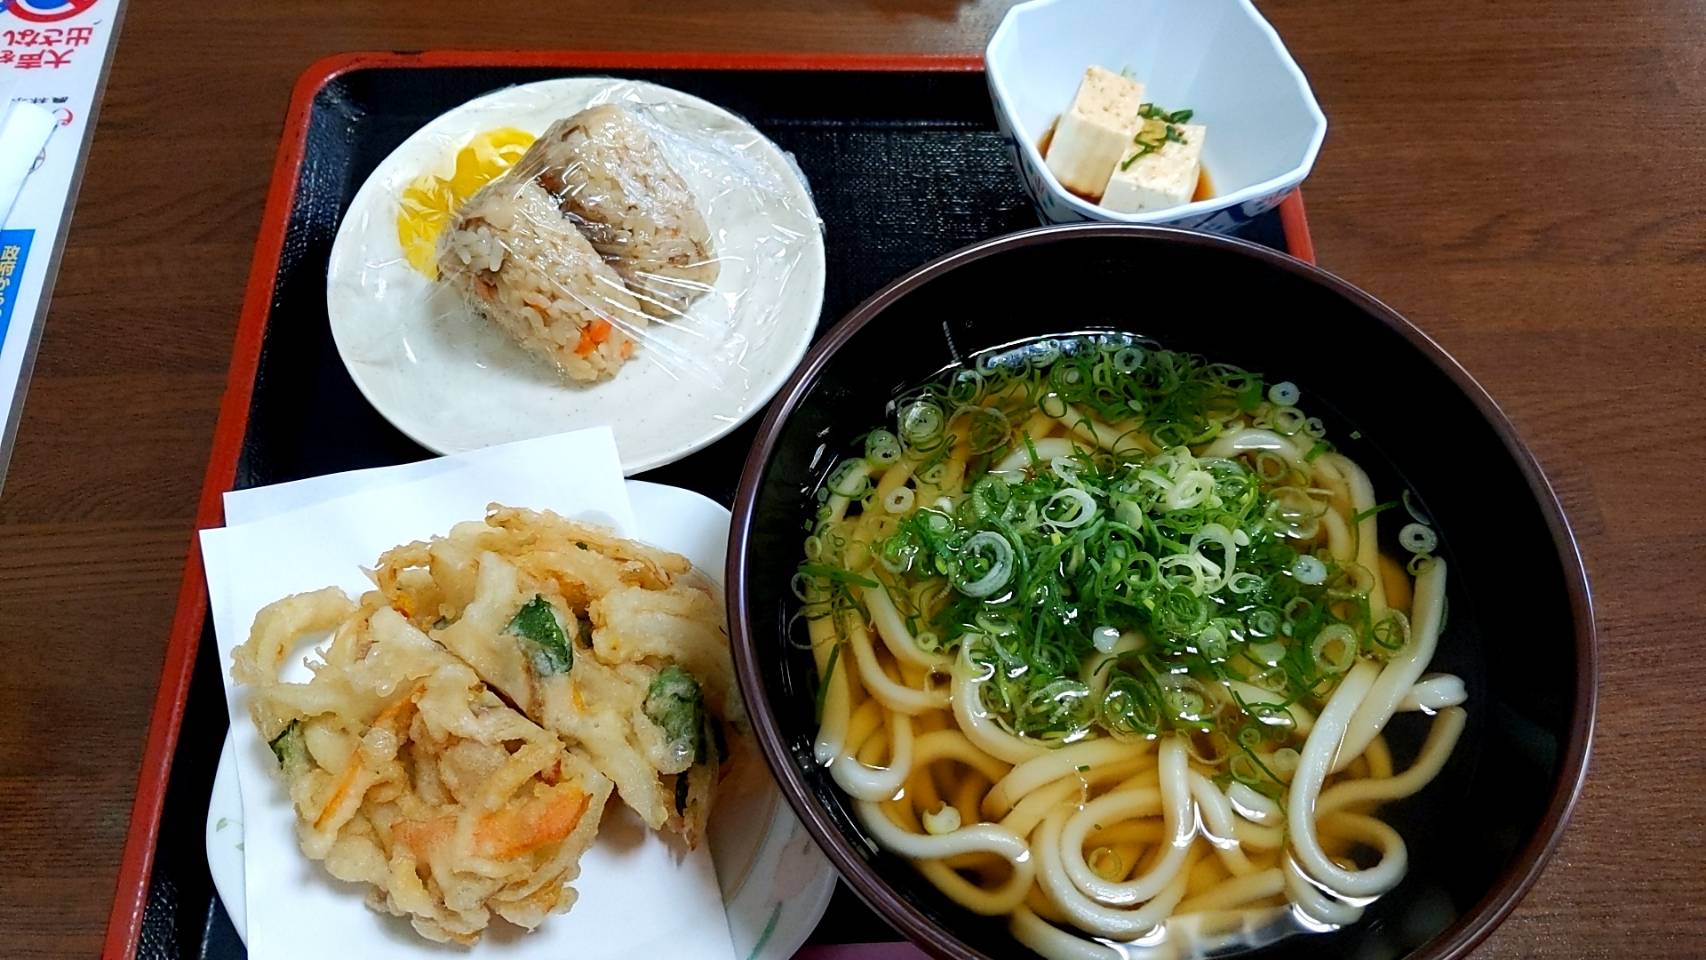 味よし、鮮度よし、価格よし！糸島「伊都菜彩」の隣にある、理想のうどん屋「まるいとうどん」